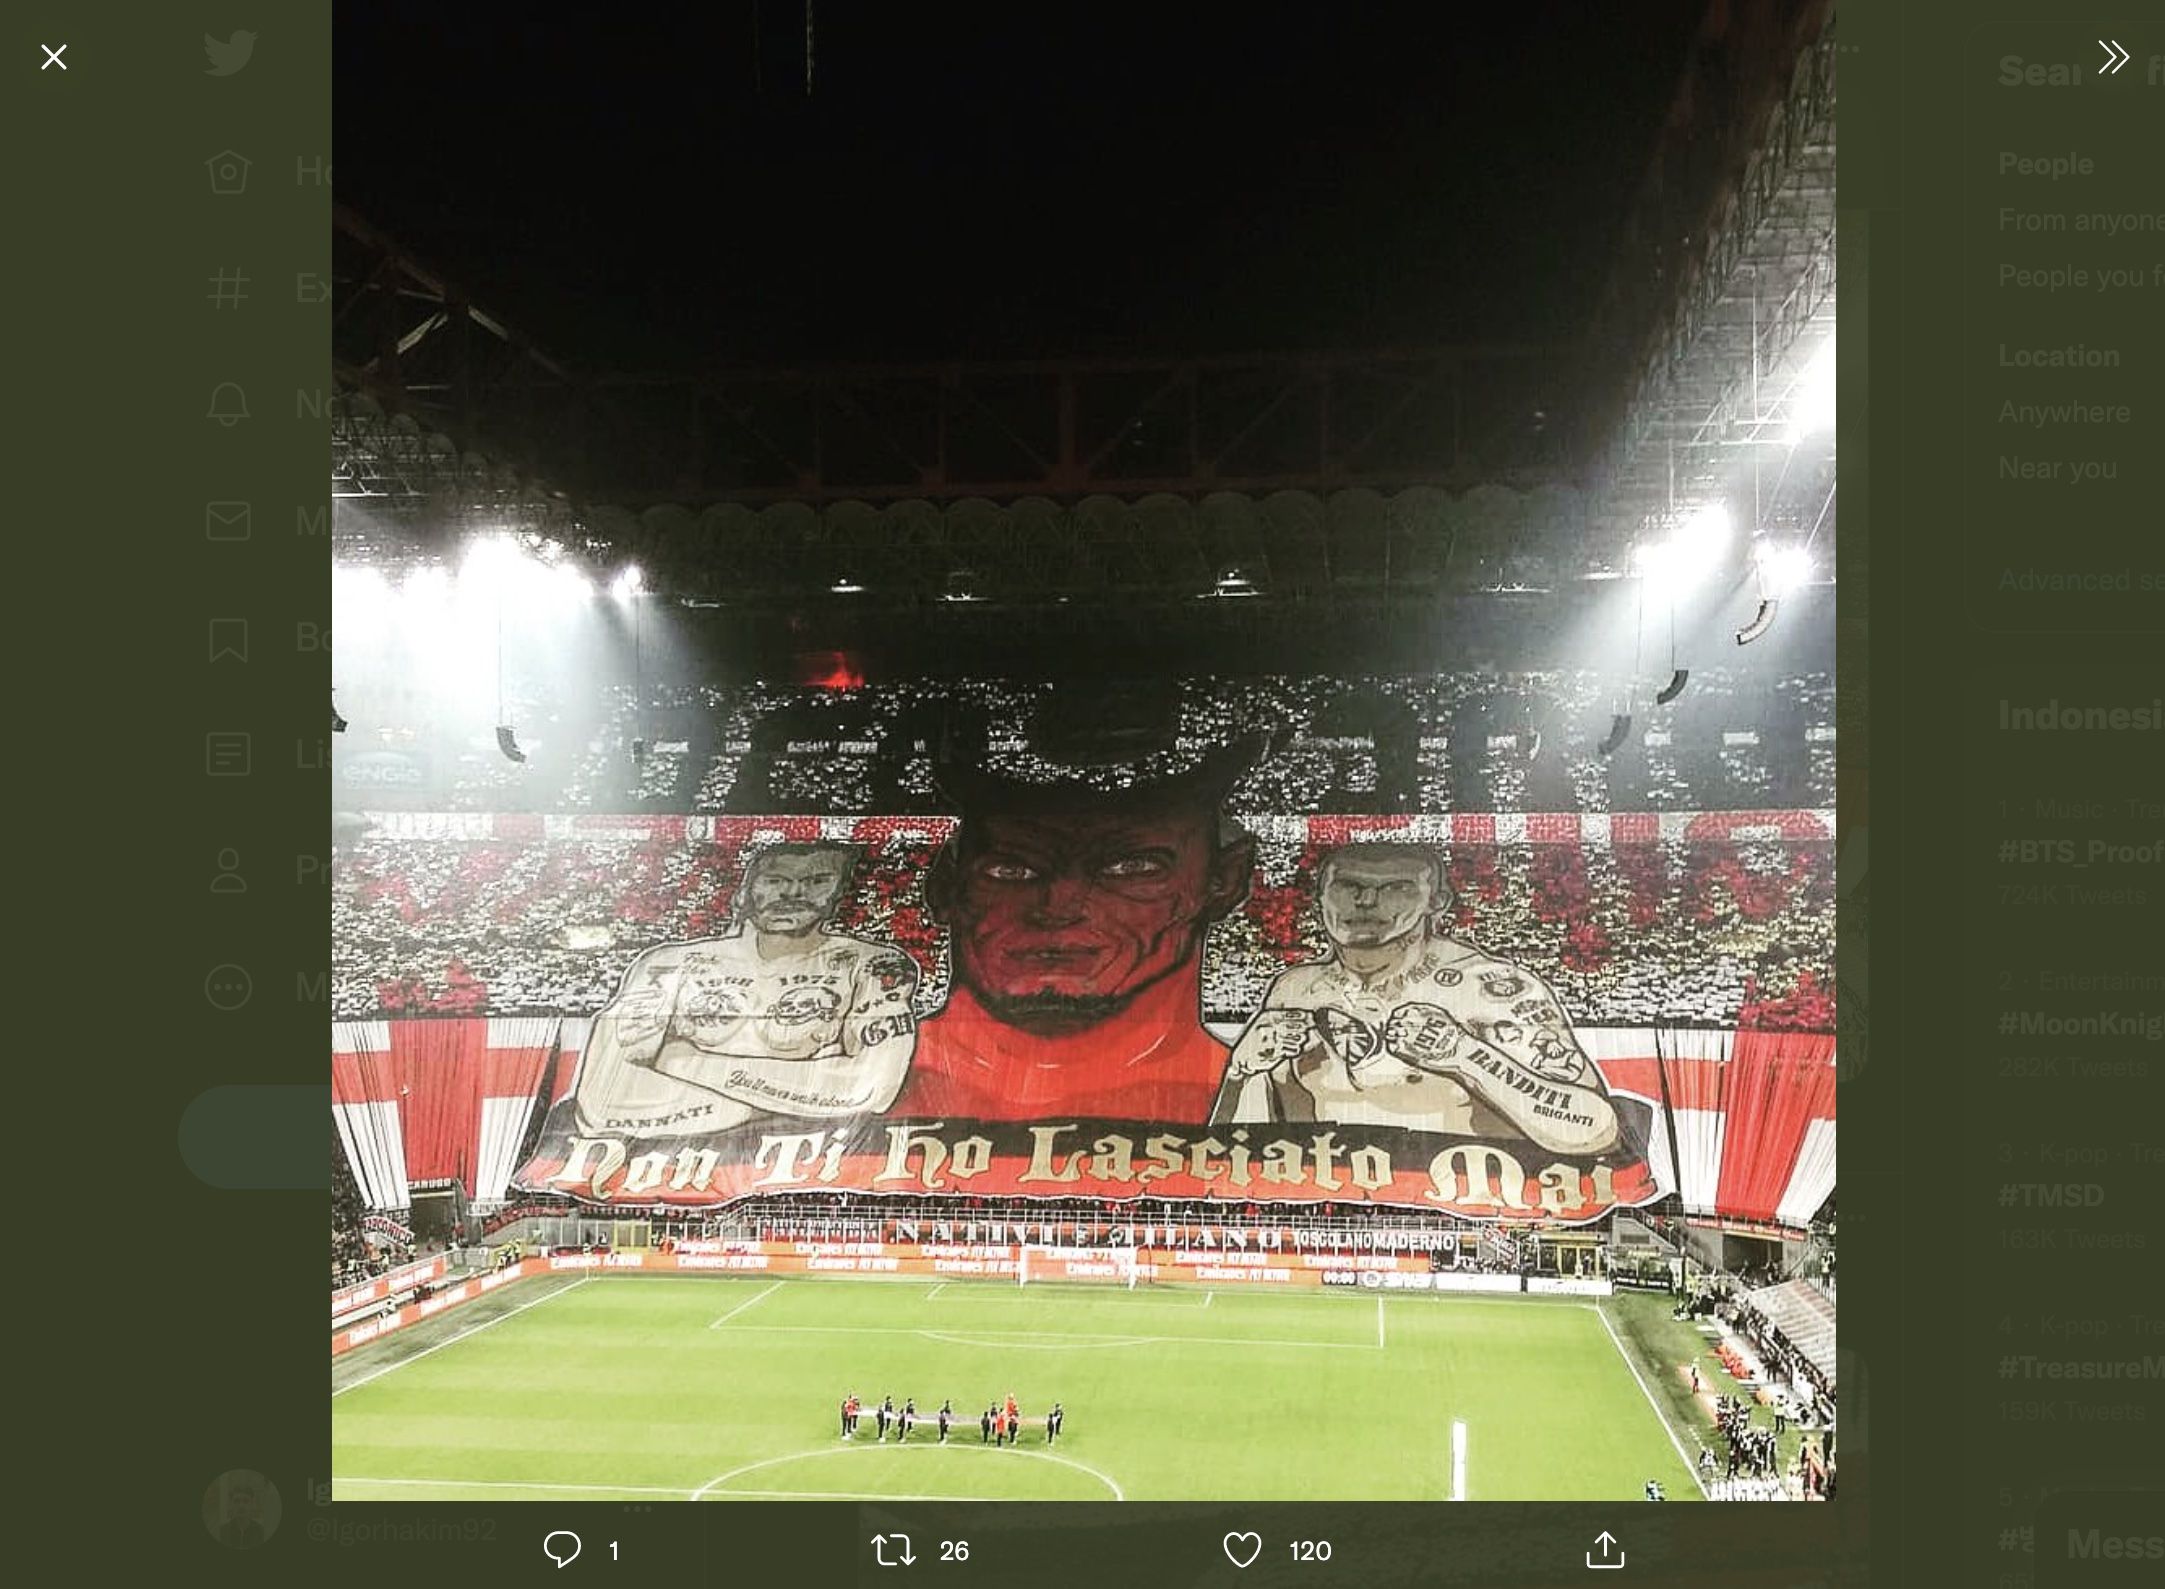 Gambar raksasa yang dipajang oleh ultras AC Milan saat pertandingan di San Siro.